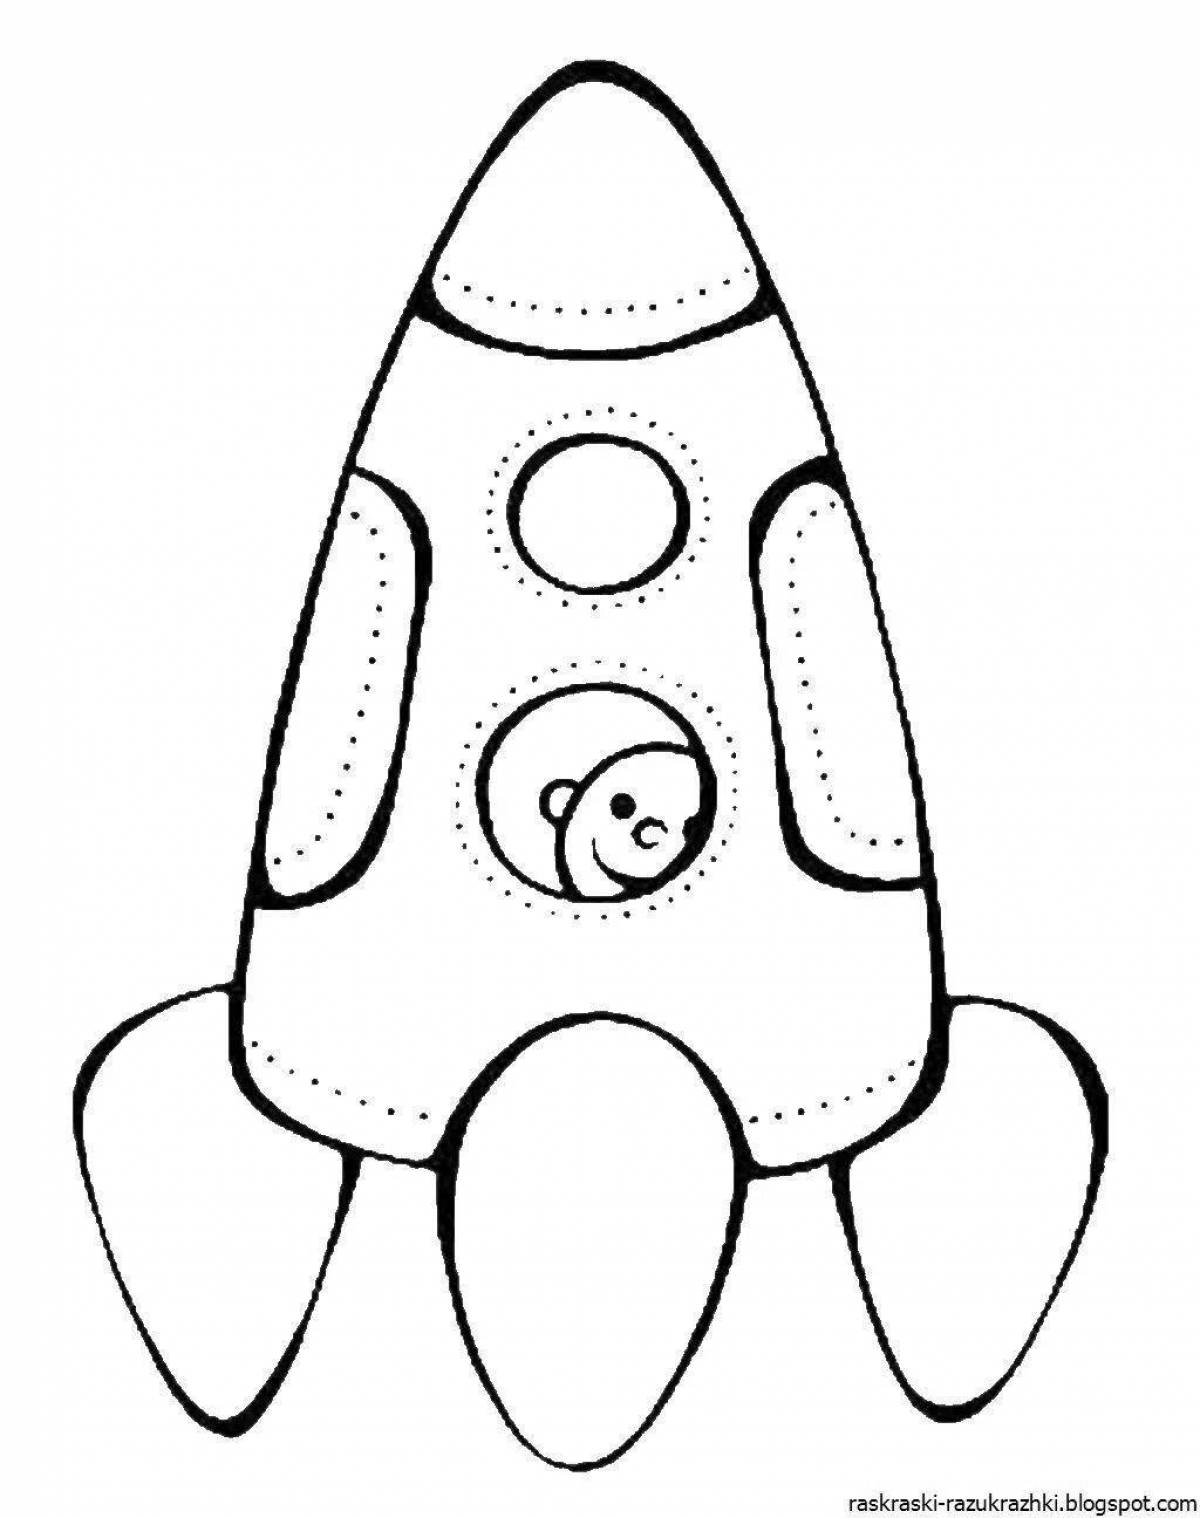 Динамическая ракета-раскраска для детей 3-4 лет